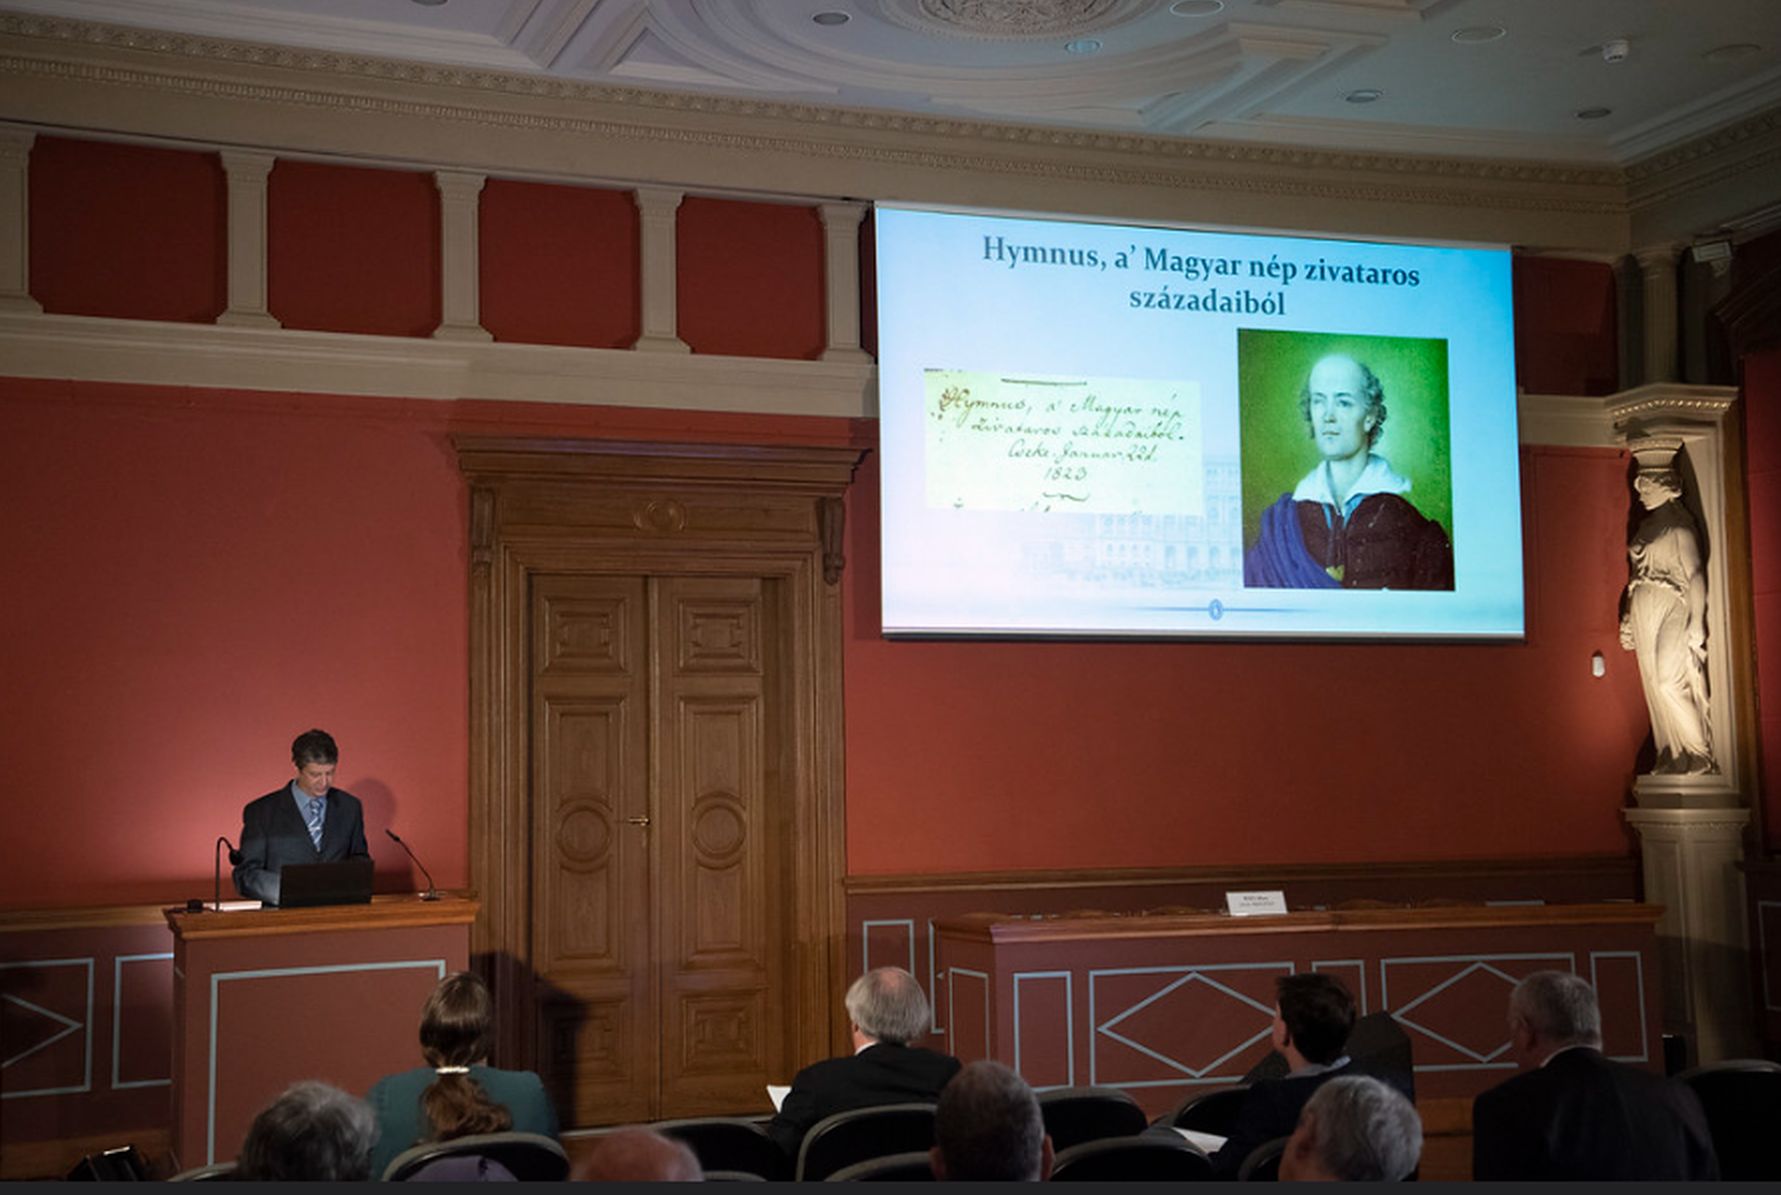 Kölcsey Ferenc 200 éves Hymnusa – a konferencia előadásai